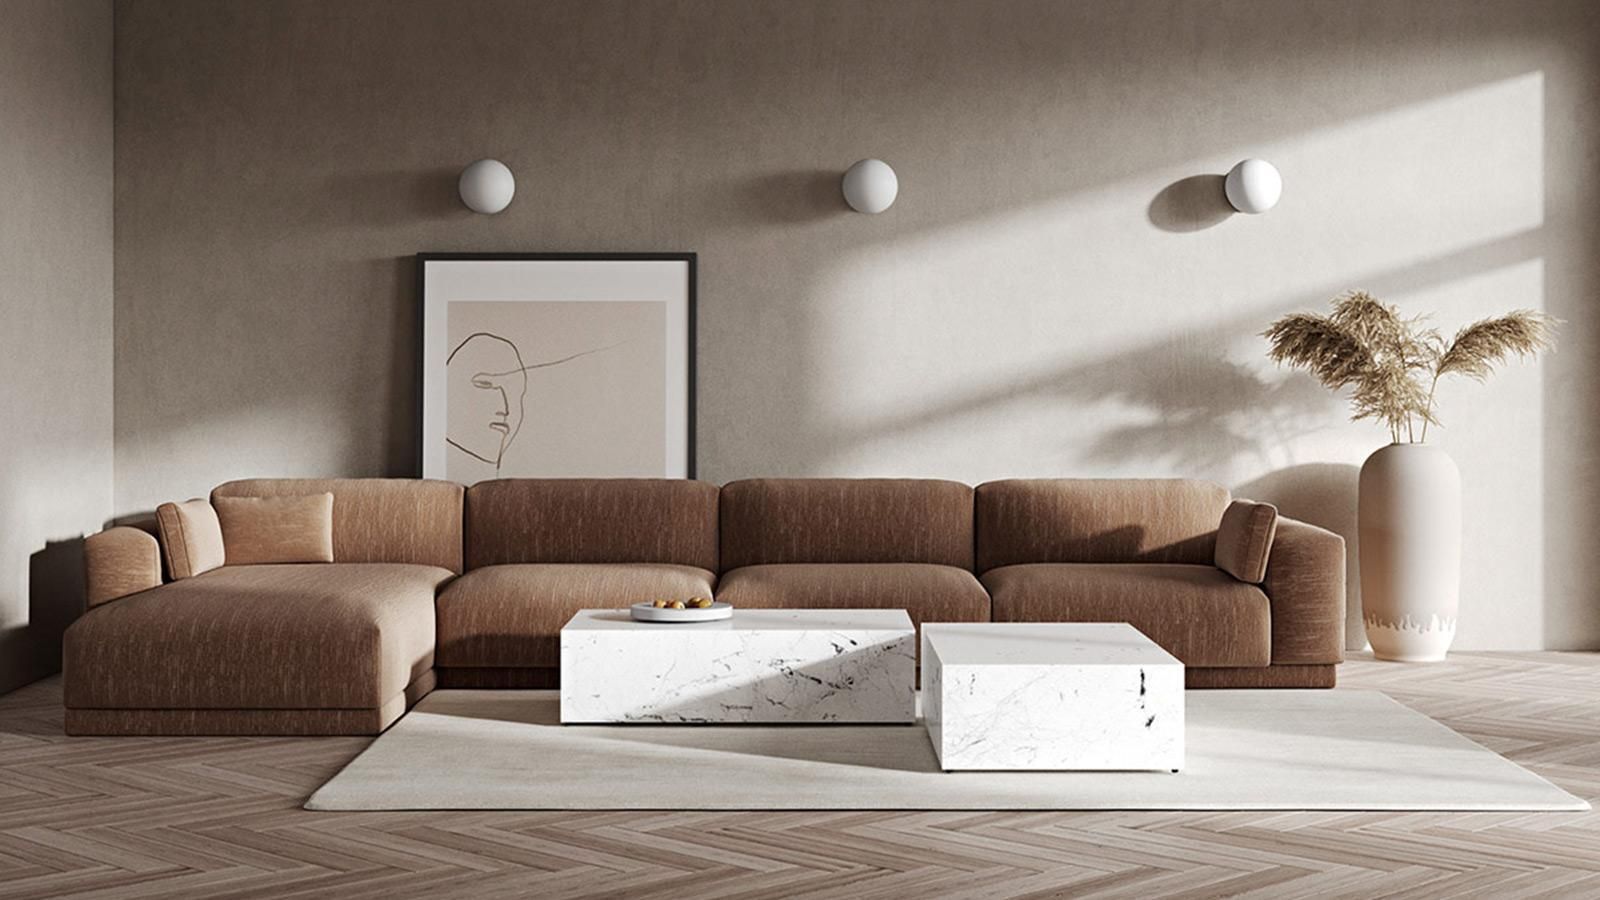 Những vật liệu nào ưu tiên sử dụng trong phong cách thiết kế nội thất tối giản Minimalism Style?